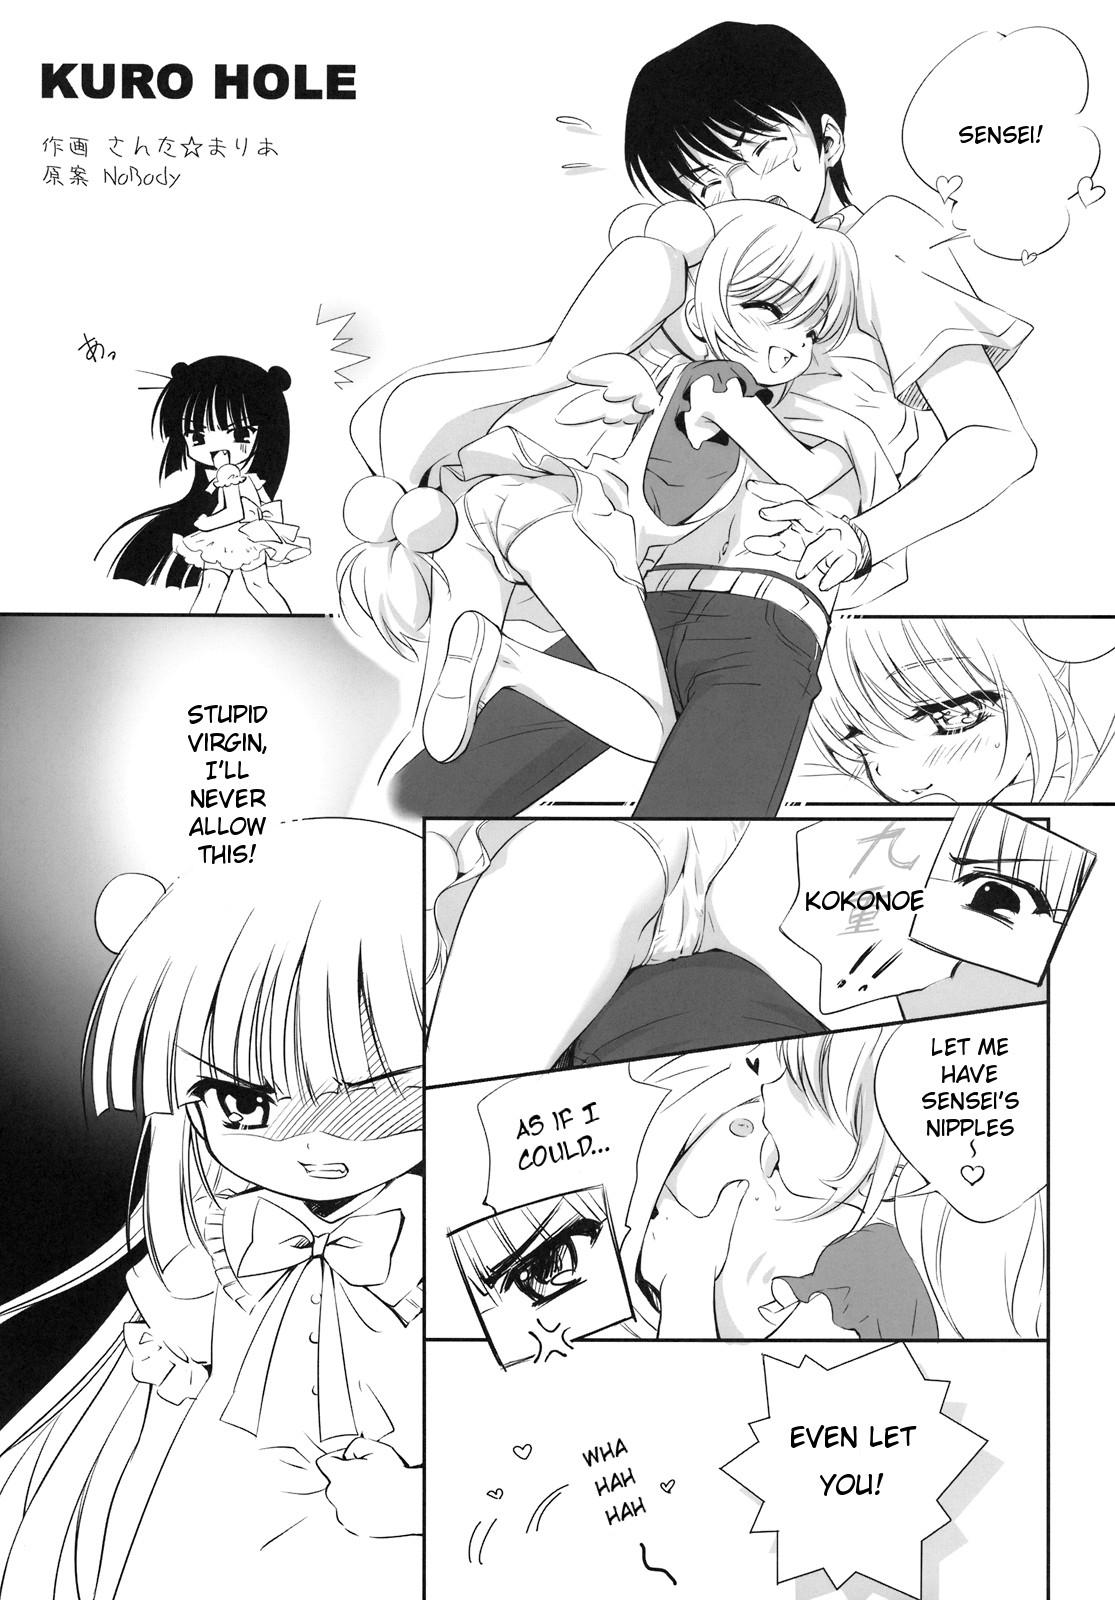 Sex Toy KURO HOLE - Kodomo no jikan Gaypawn - Page 2